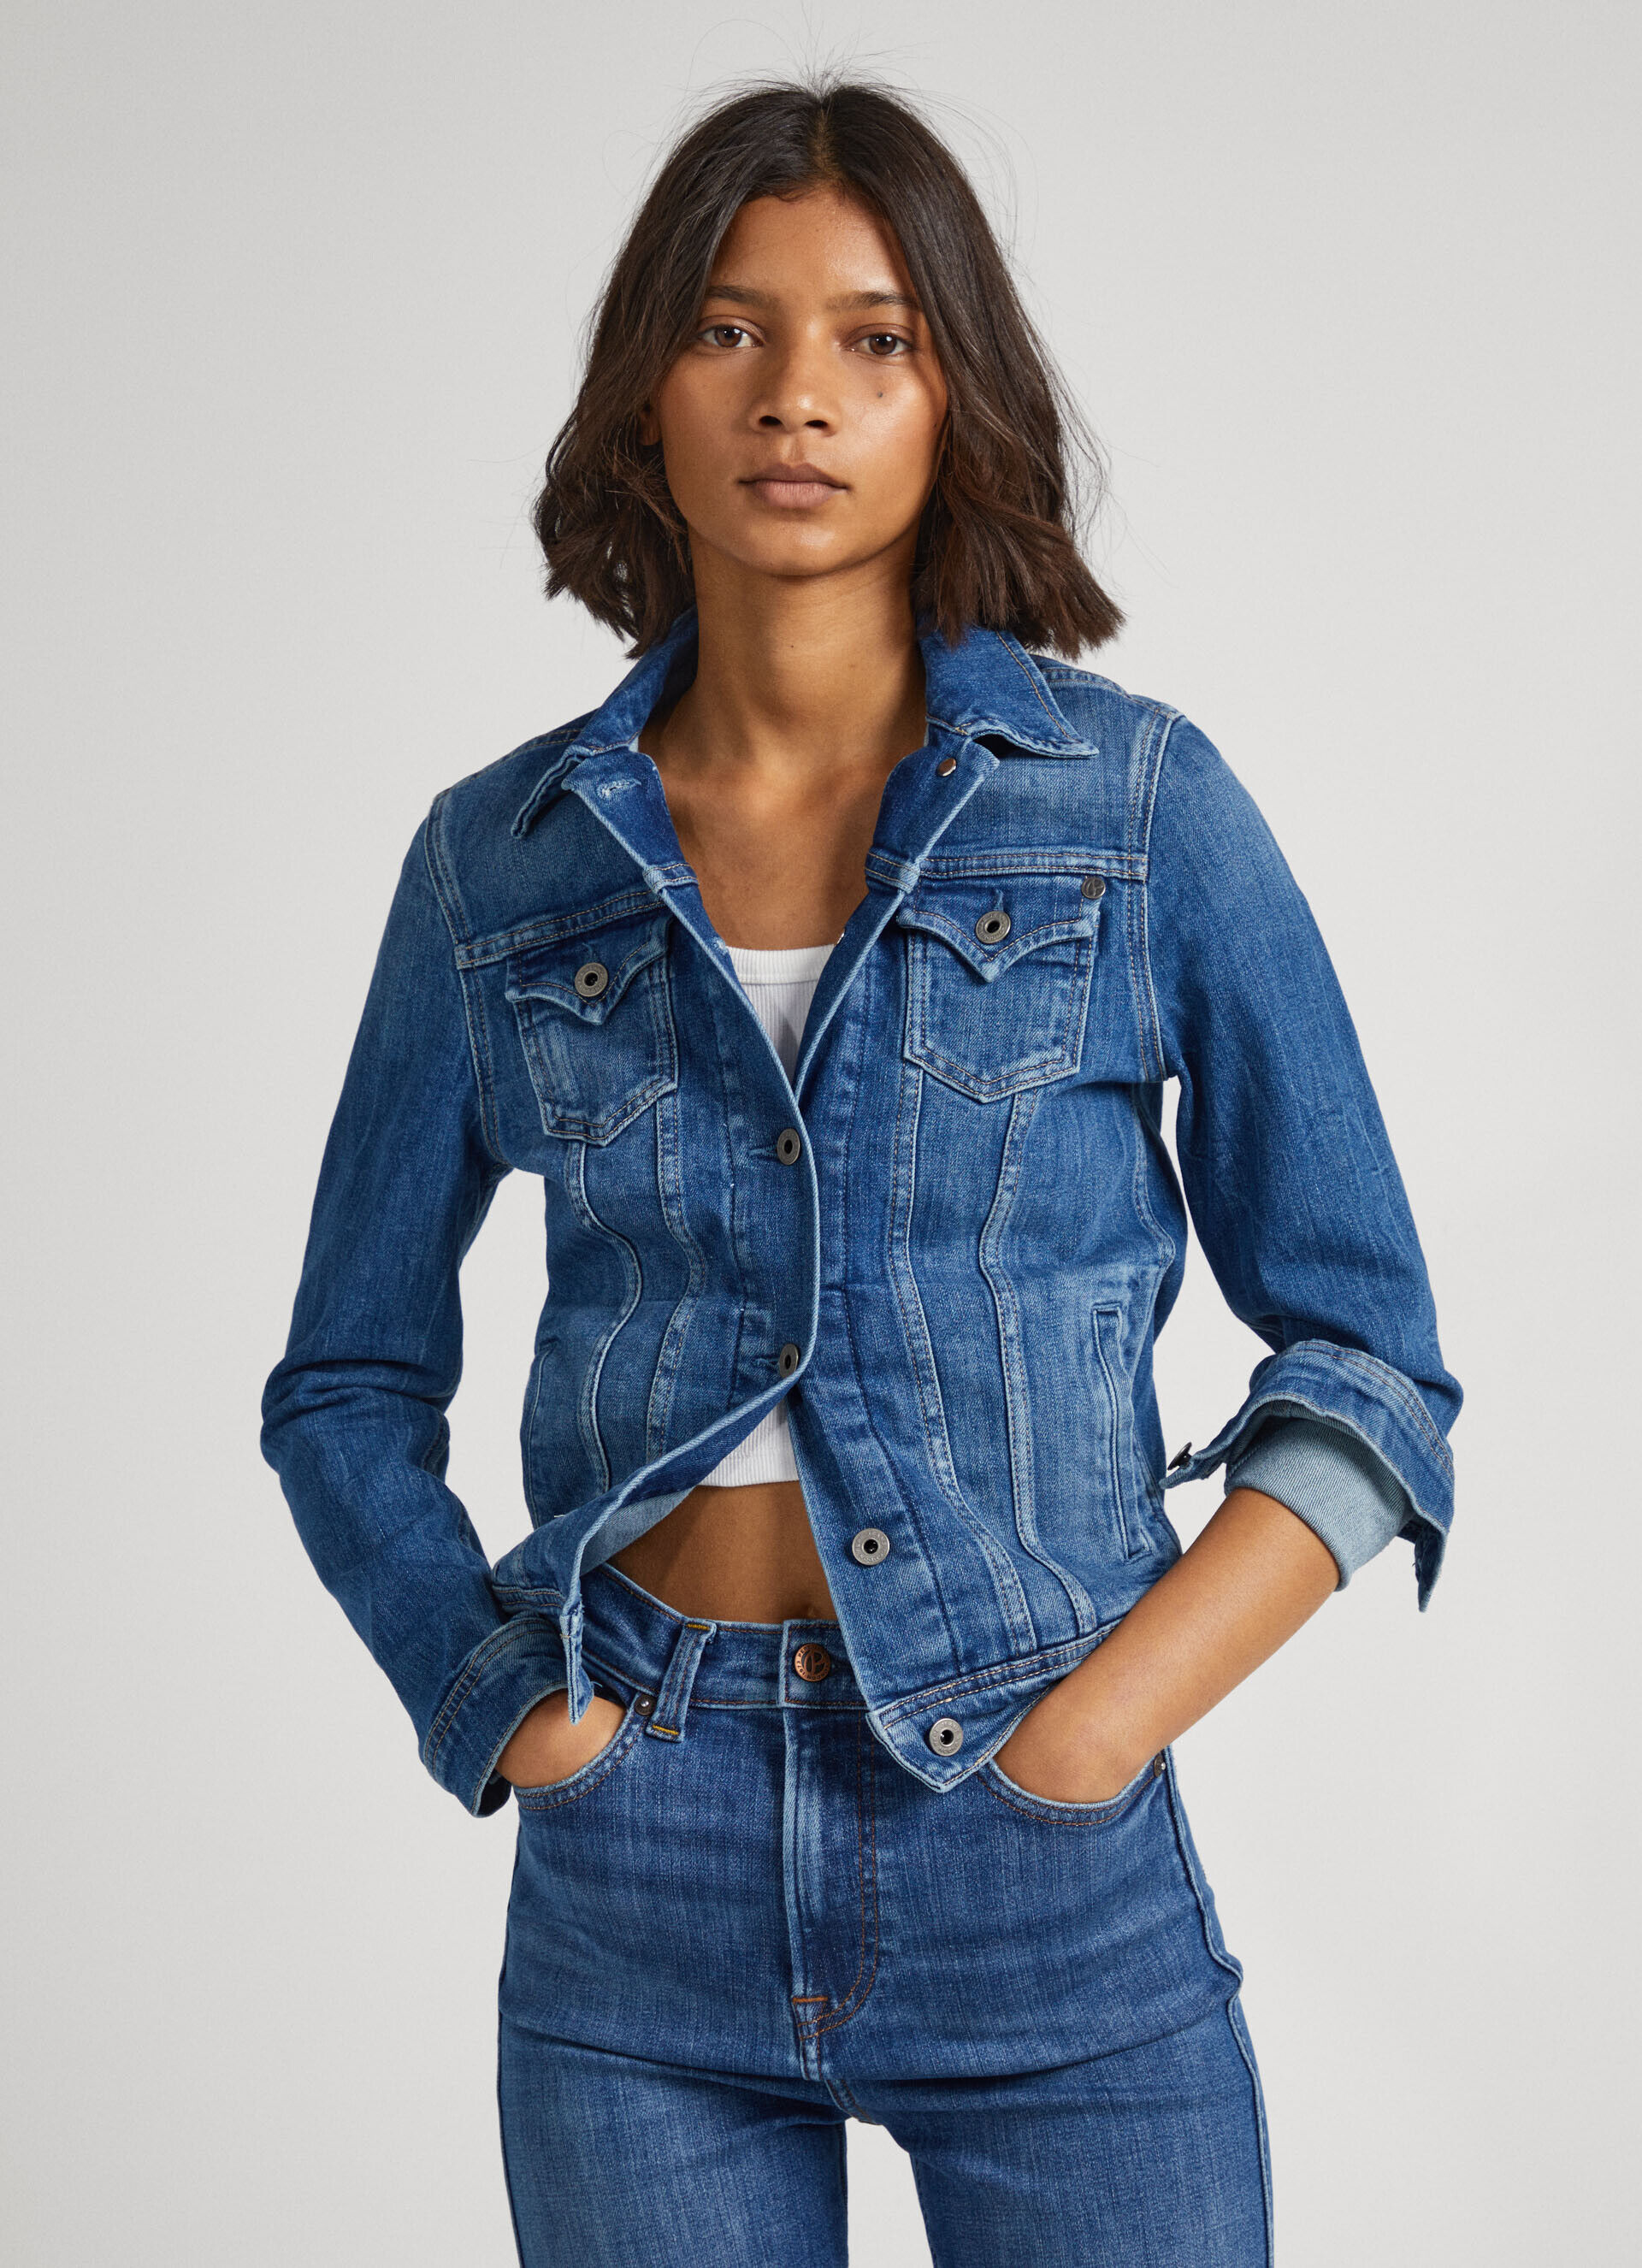 Buy Ladies Jeans Jacket online - Best Price in Kenya | Jumia KE